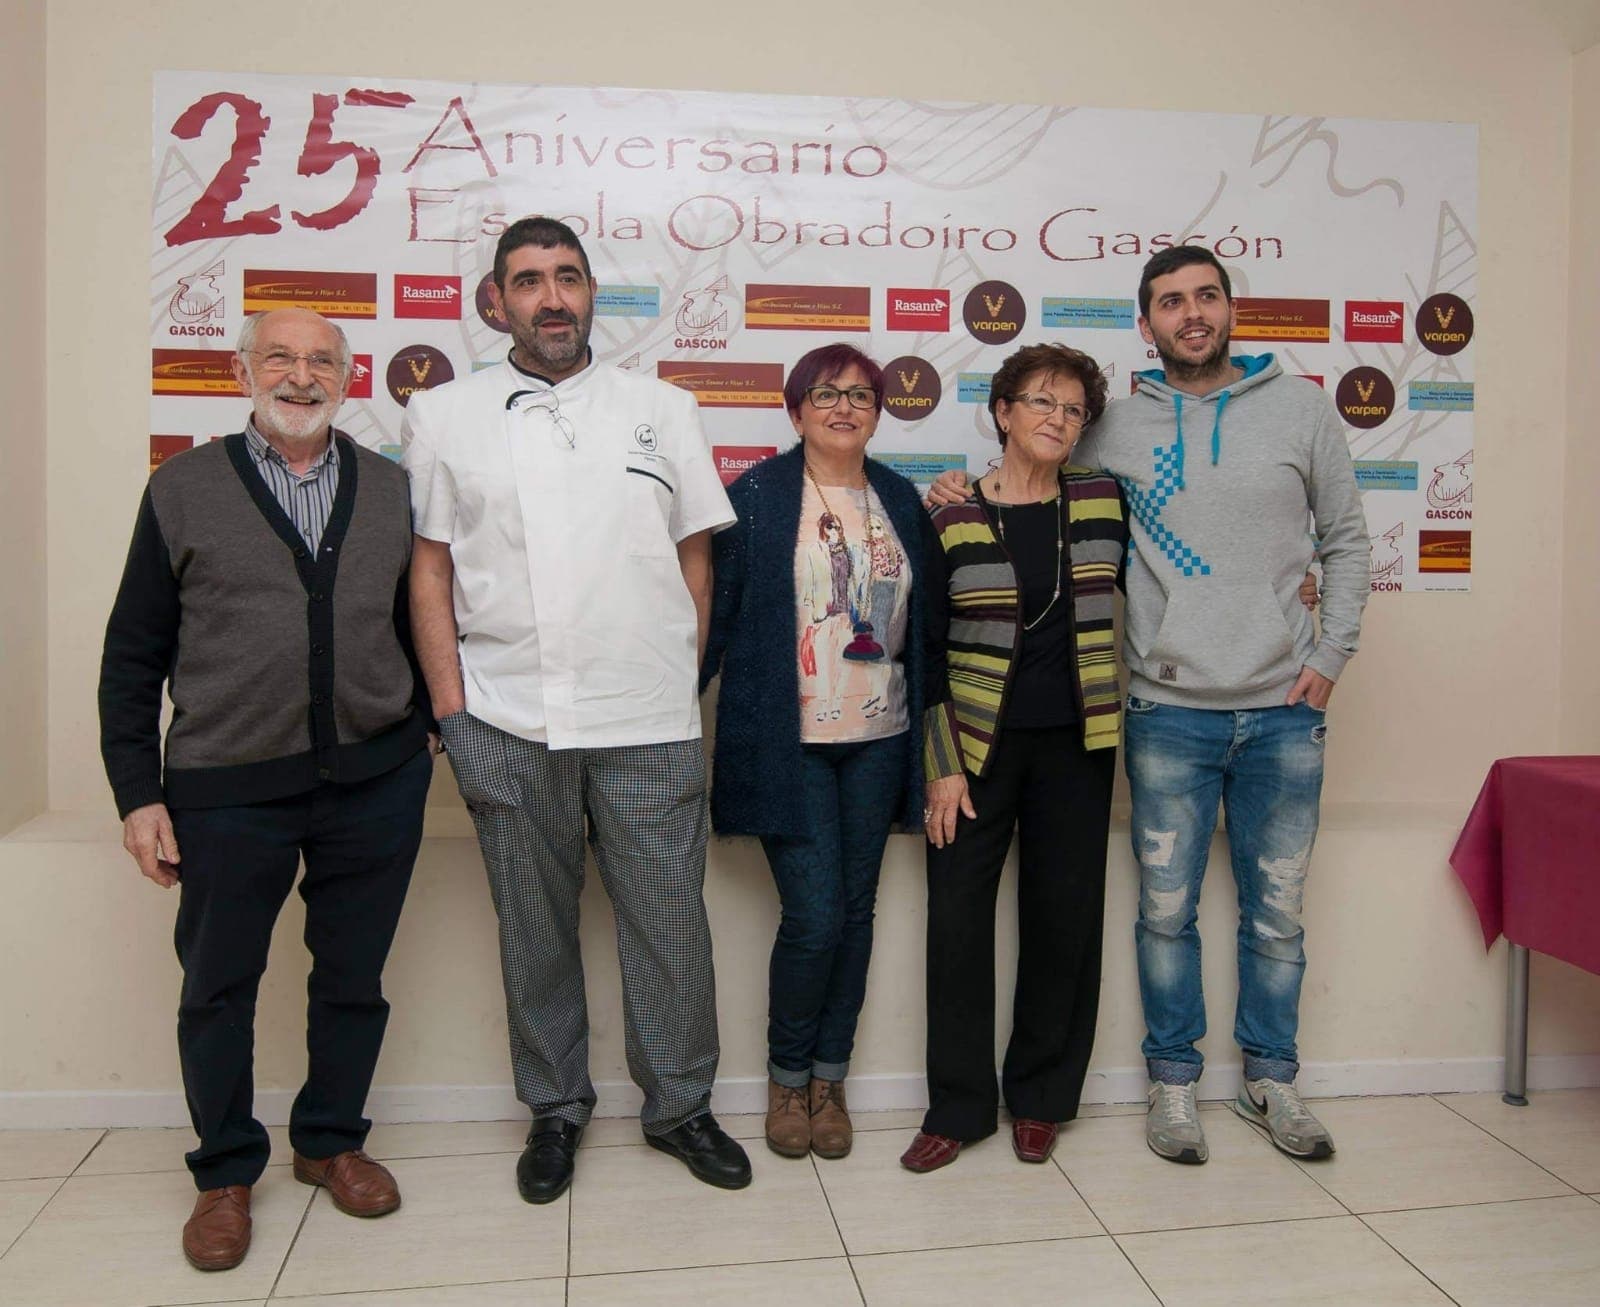 La familia Gascón en el 25 aniversario de la Escola Obradoiro 